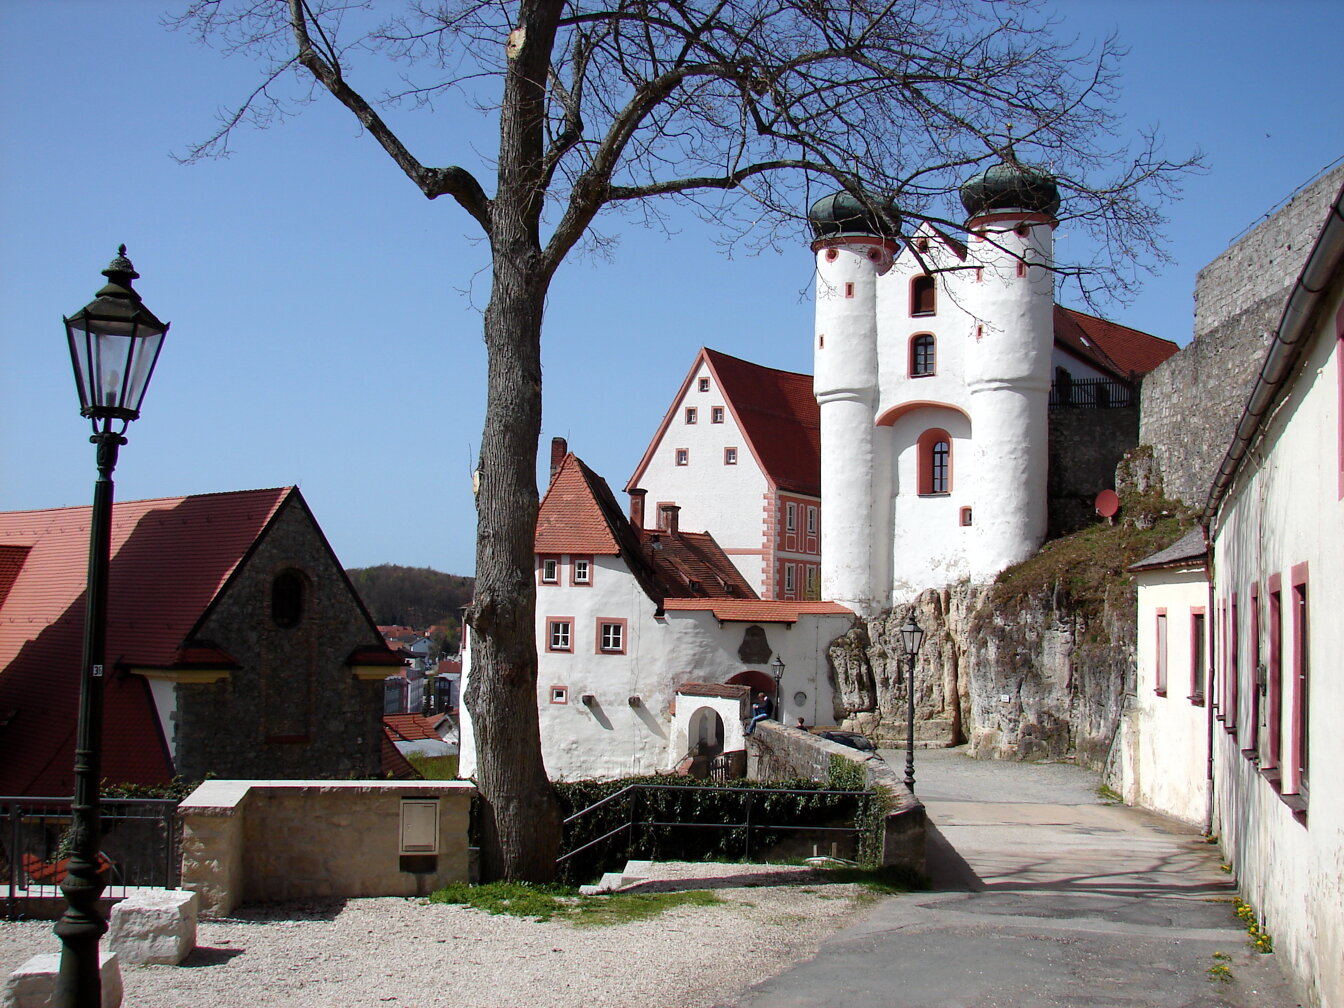 Bild der Stadt Parsberg